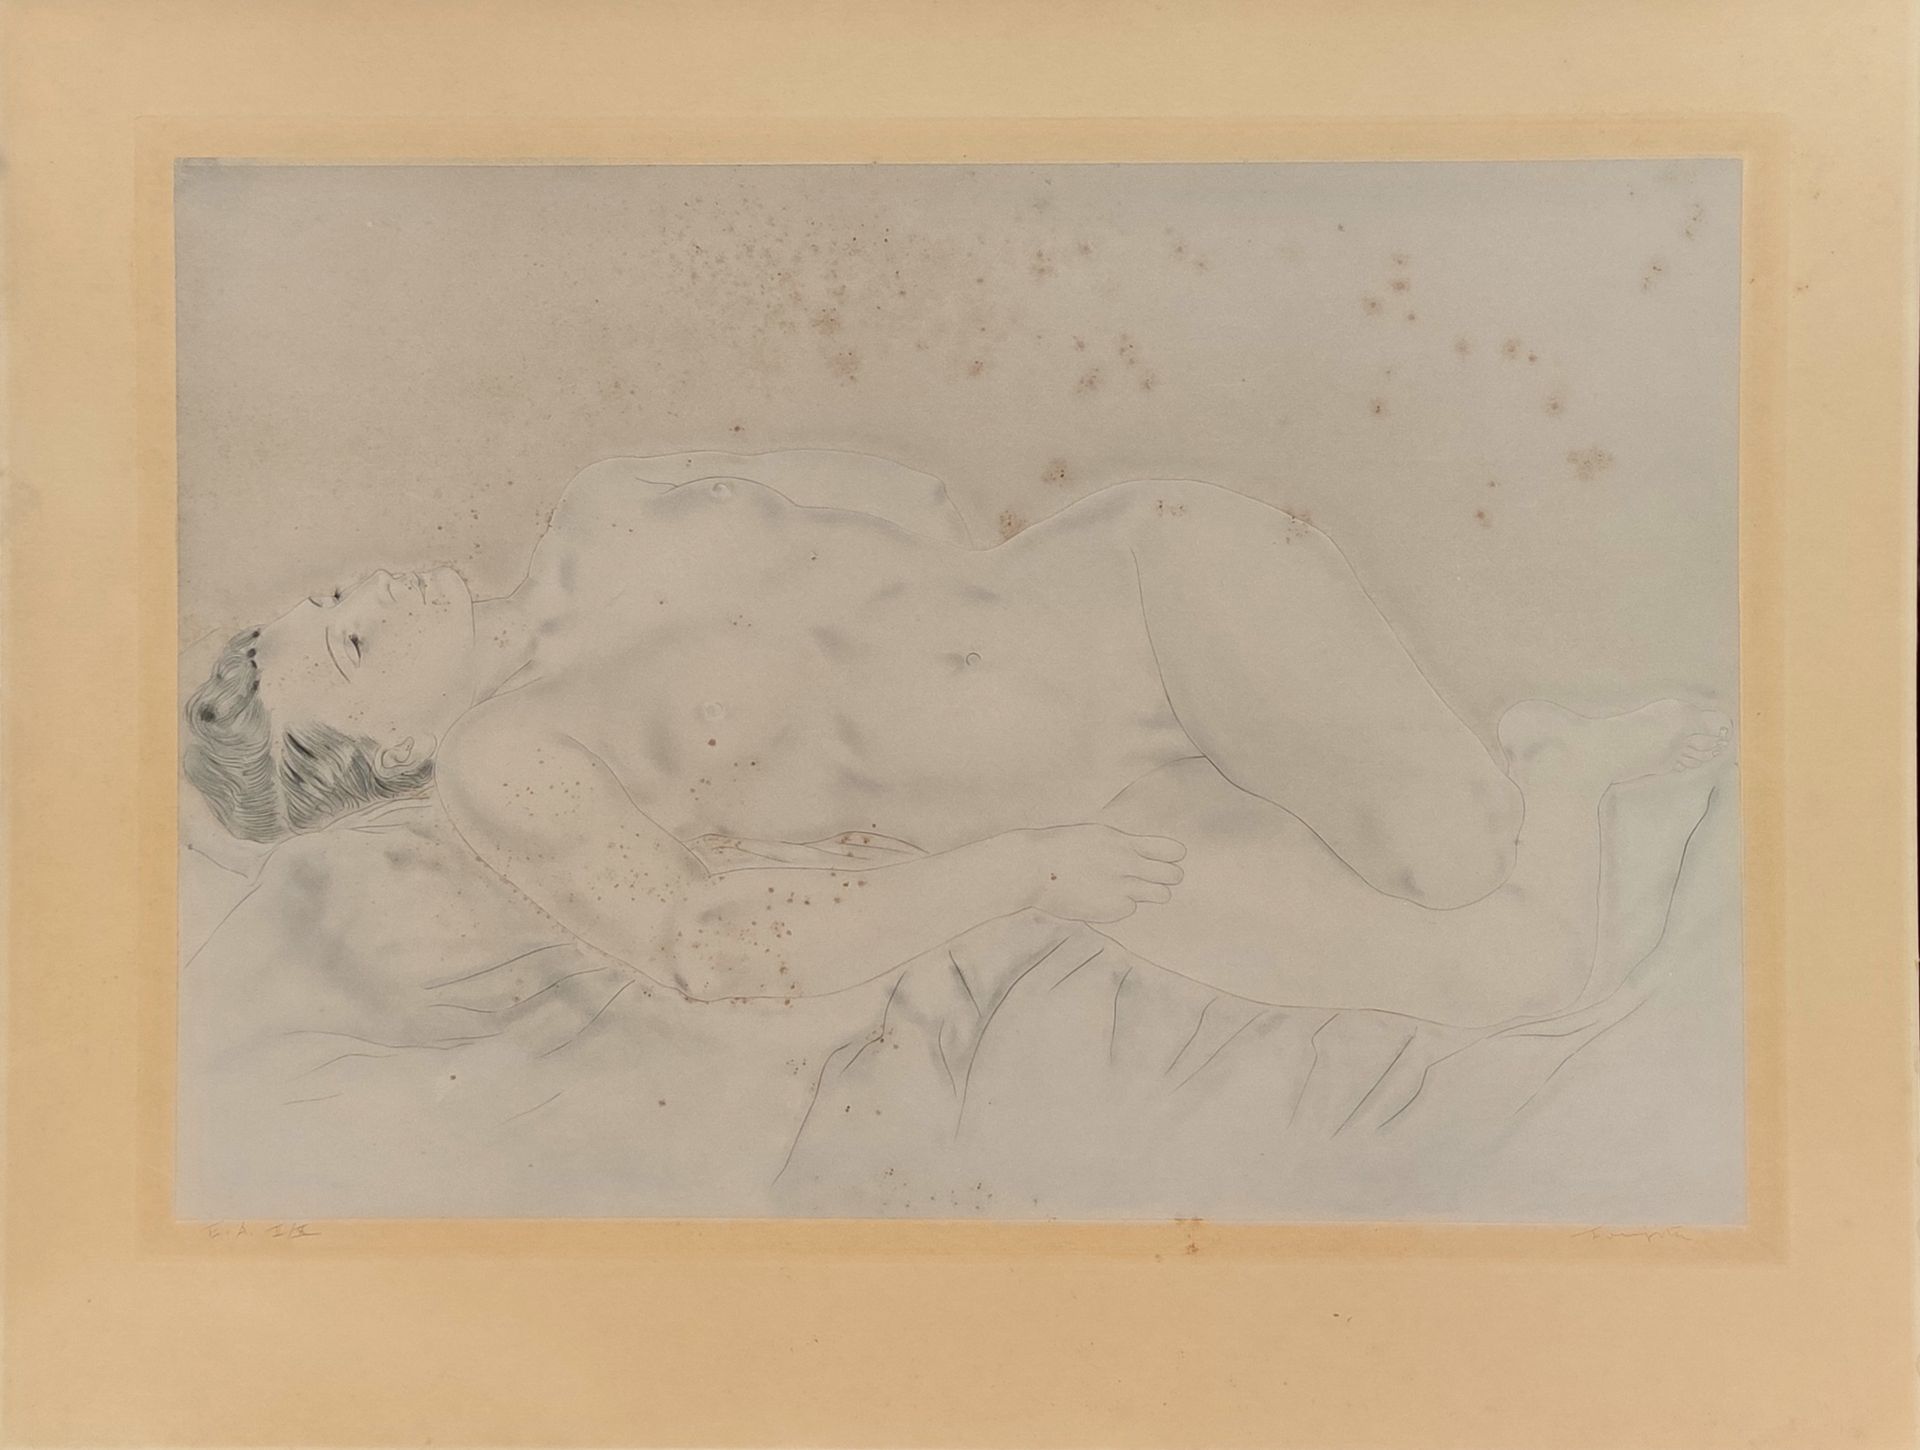 Null 
藤田嗣治 (1886-1968)

躺着的裸体模特

干点和水印版画，边缘有罗马数字EA II/X的注释，并有艺术家的石墨签名

视力表：52.5 &hellip;